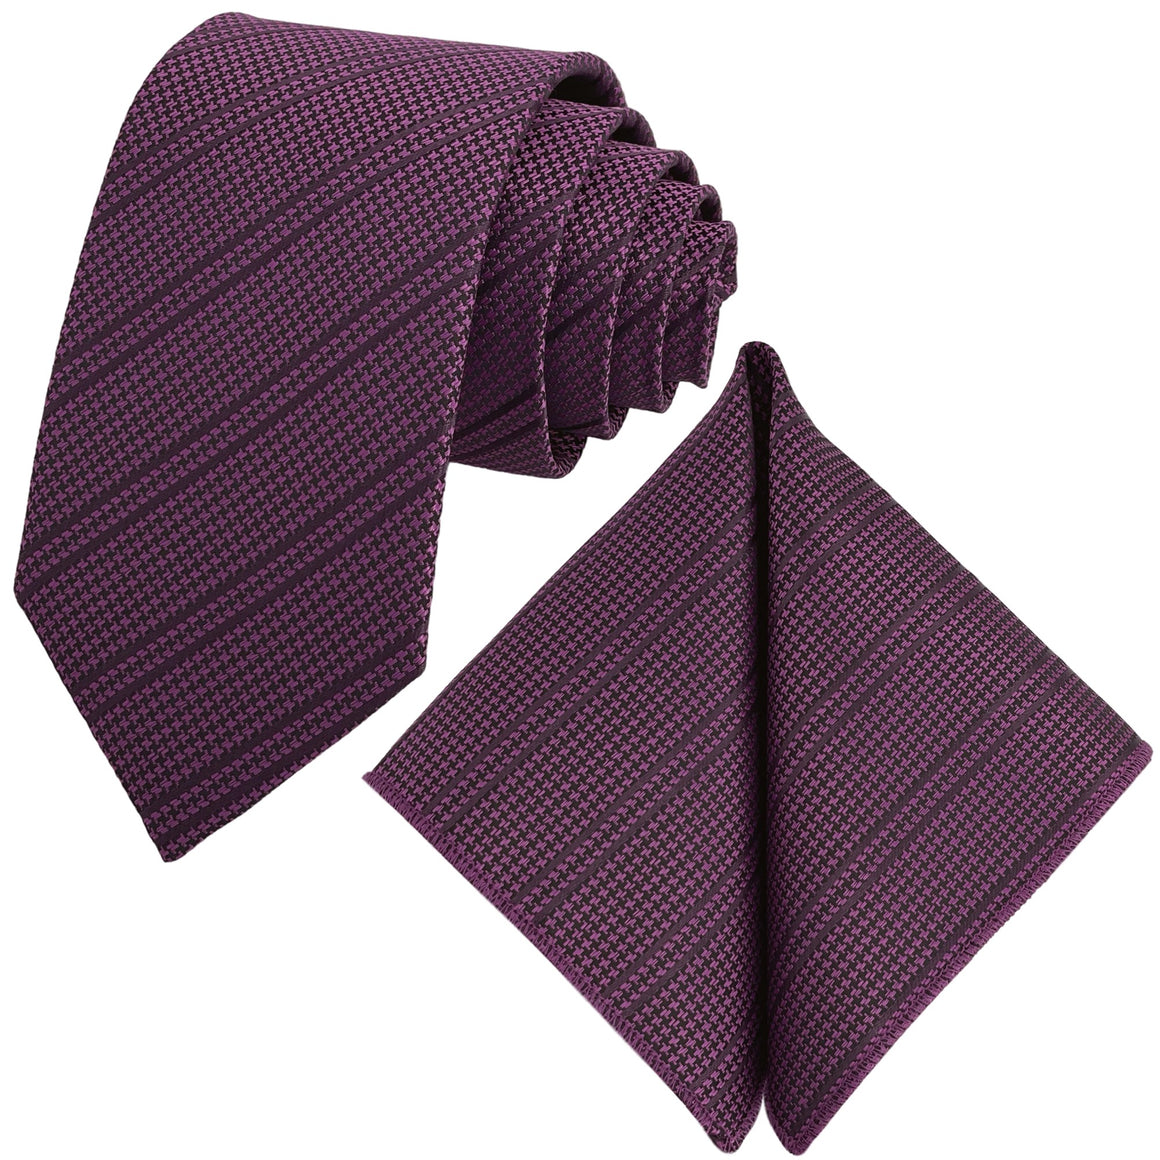 GASSANI 2-SET Krawattenset, Krawatte 8cm Schmal Hahnentritt-Muster Gestreift, Fuchsia Extra Lange Jacquard Herren-Krawatte,  Einstecktuch